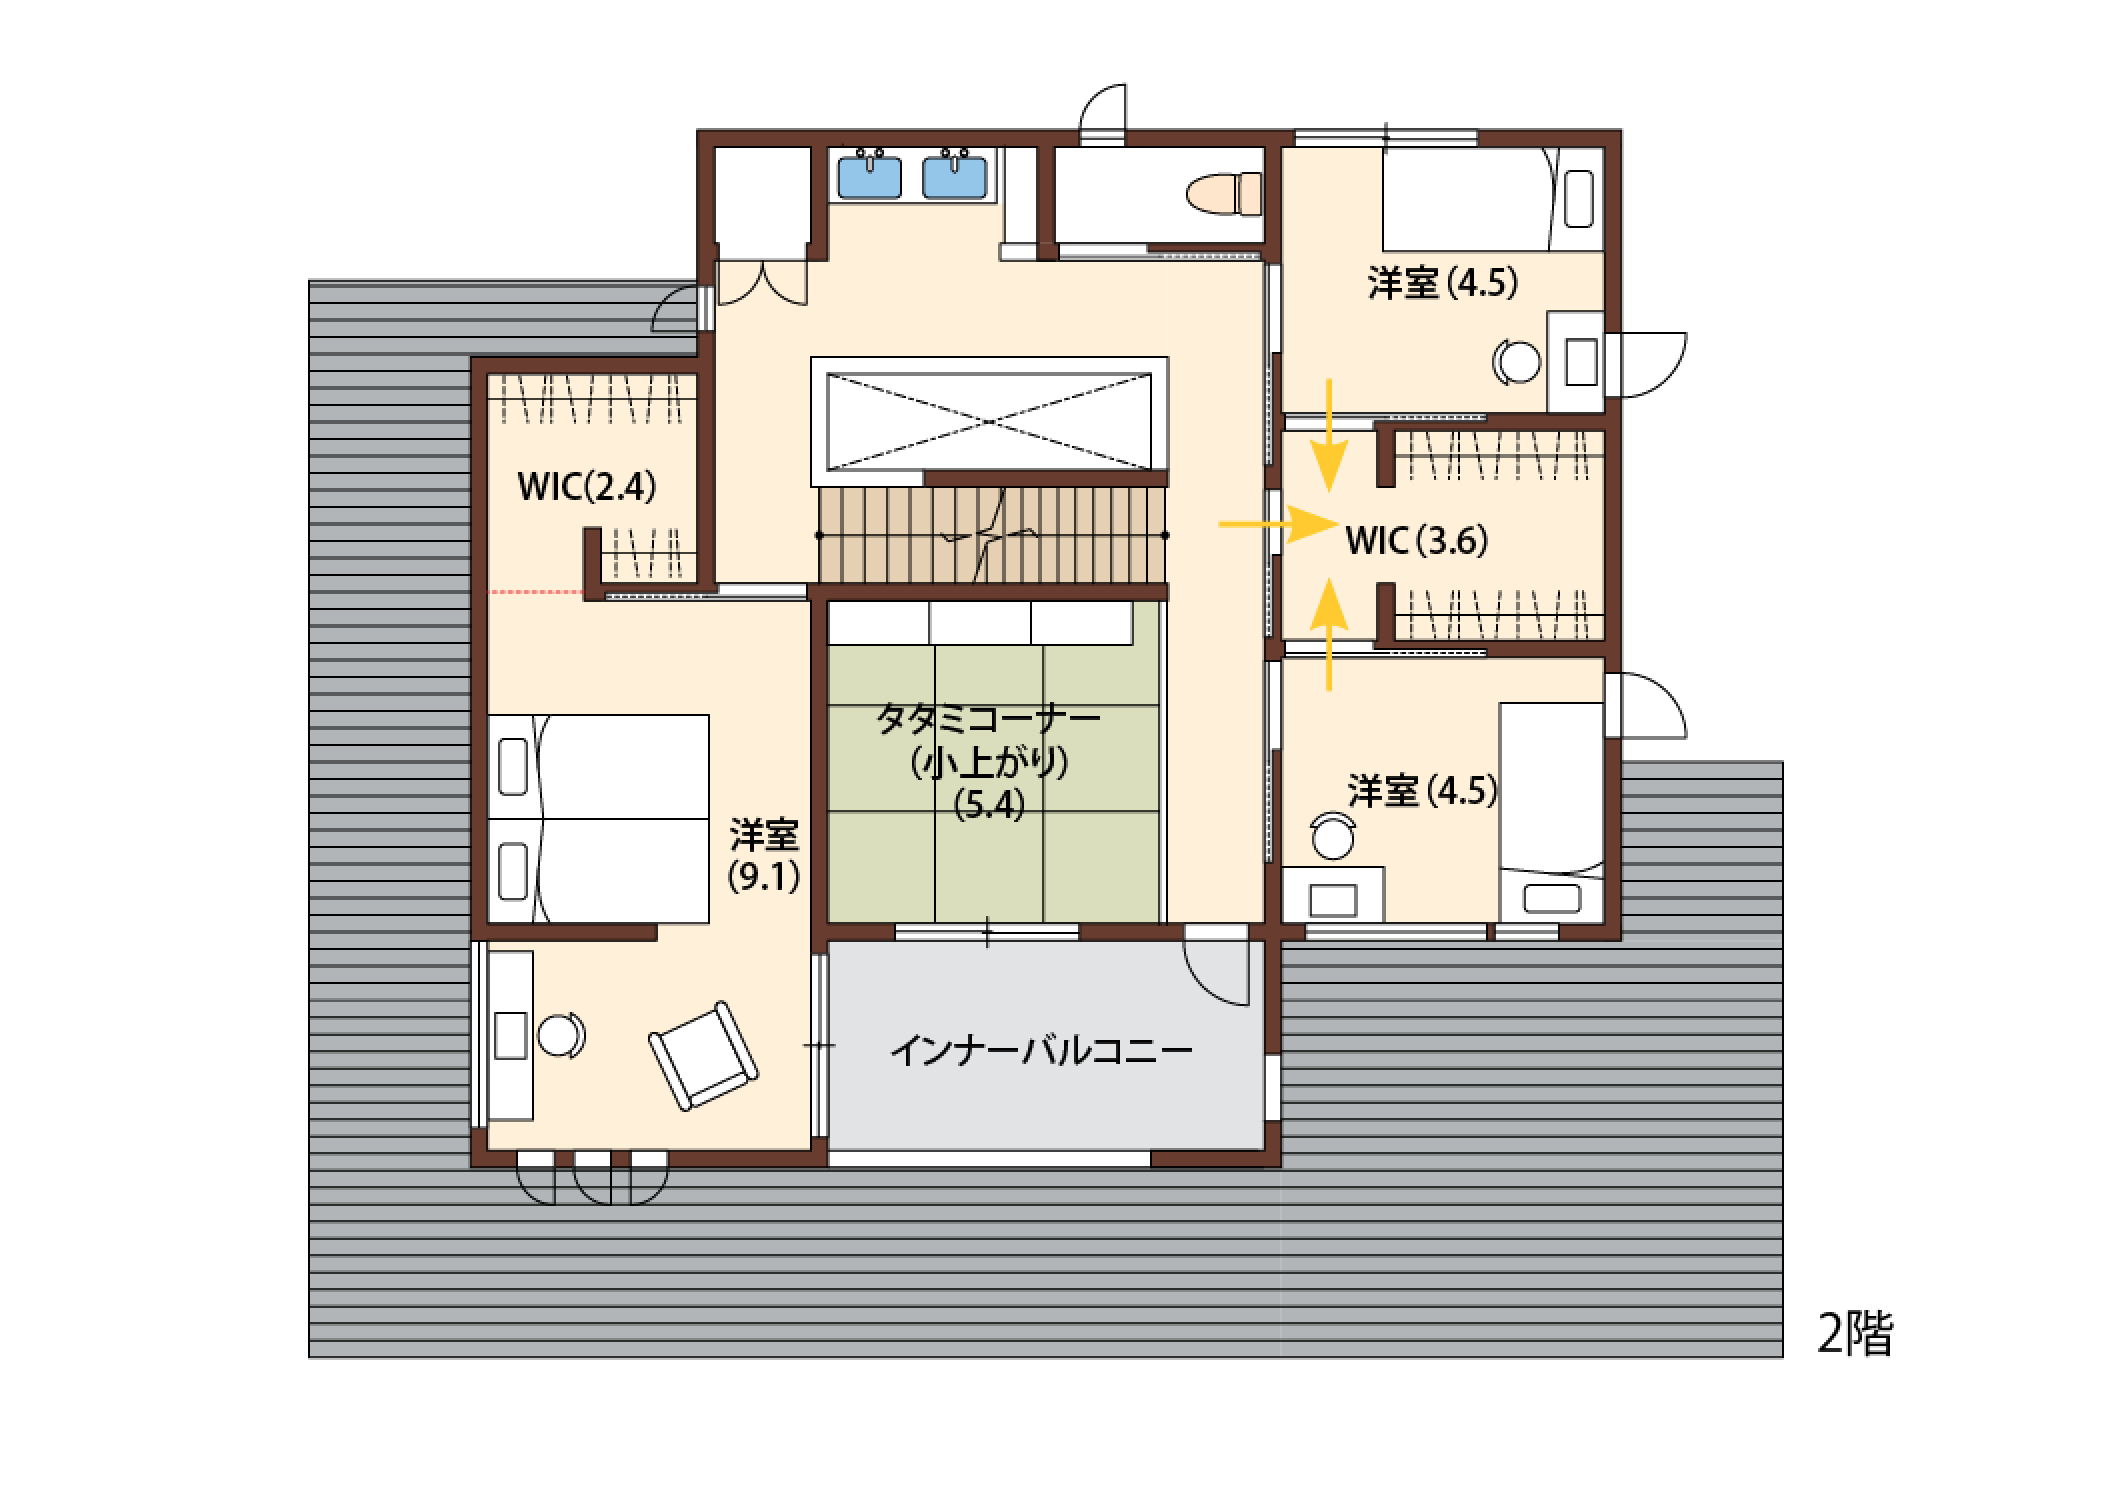 57坪 間取り 大人の和風モダンでくつろぐ注文住宅 兵庫県で家づくりならアイフルホーム